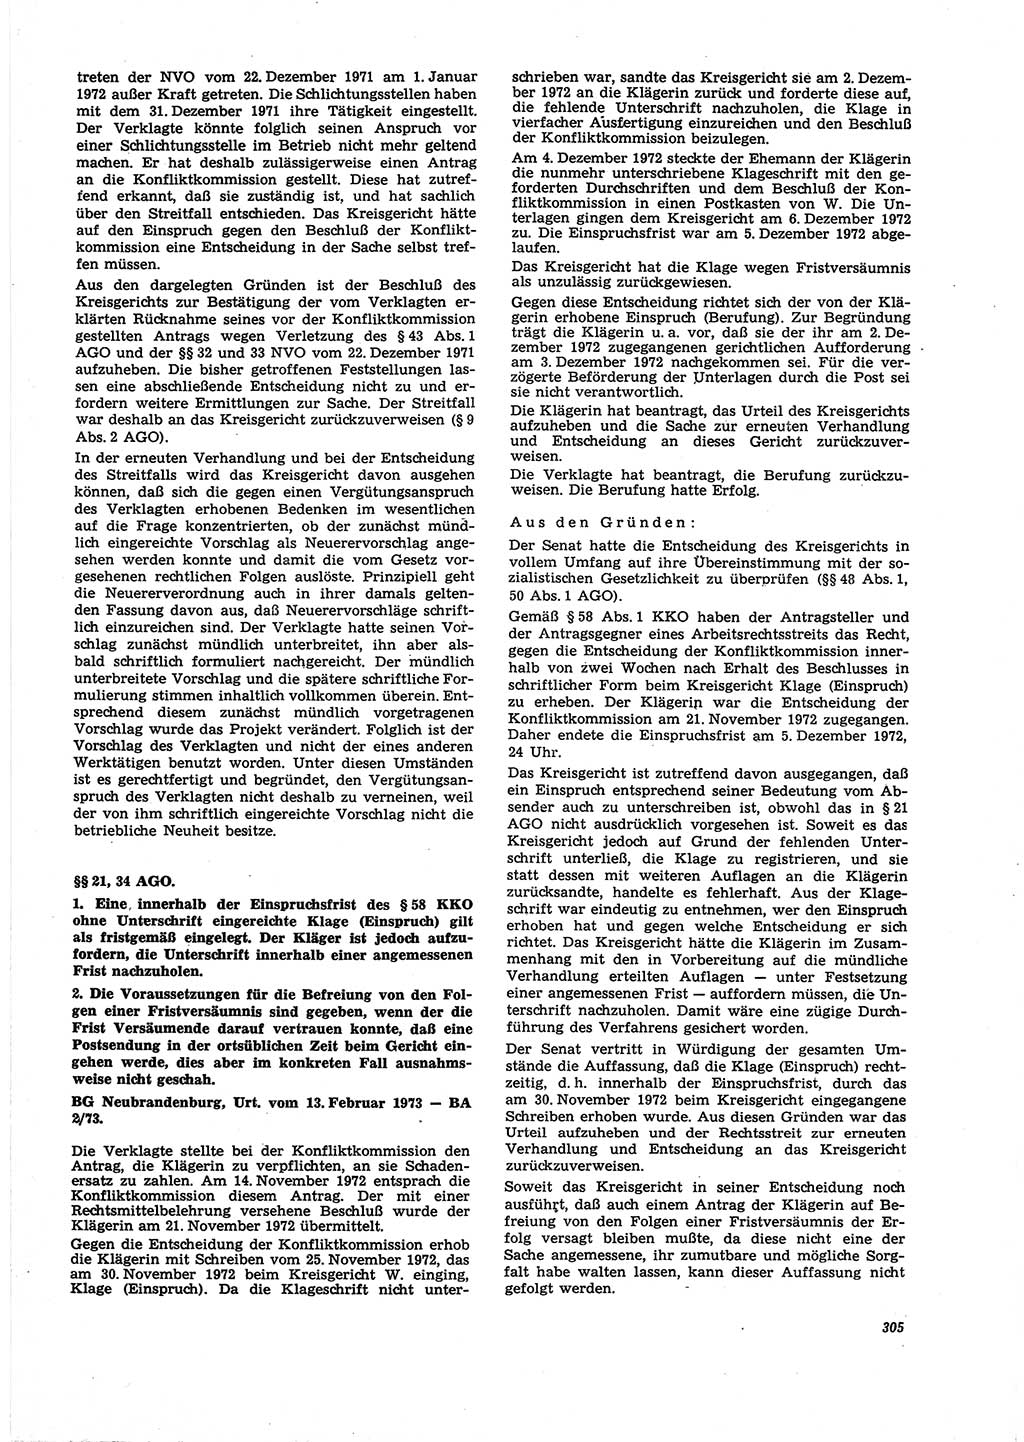 Neue Justiz (NJ), Zeitschrift für Recht und Rechtswissenschaft [Deutsche Demokratische Republik (DDR)], 27. Jahrgang 1973, Seite 305 (NJ DDR 1973, S. 305)